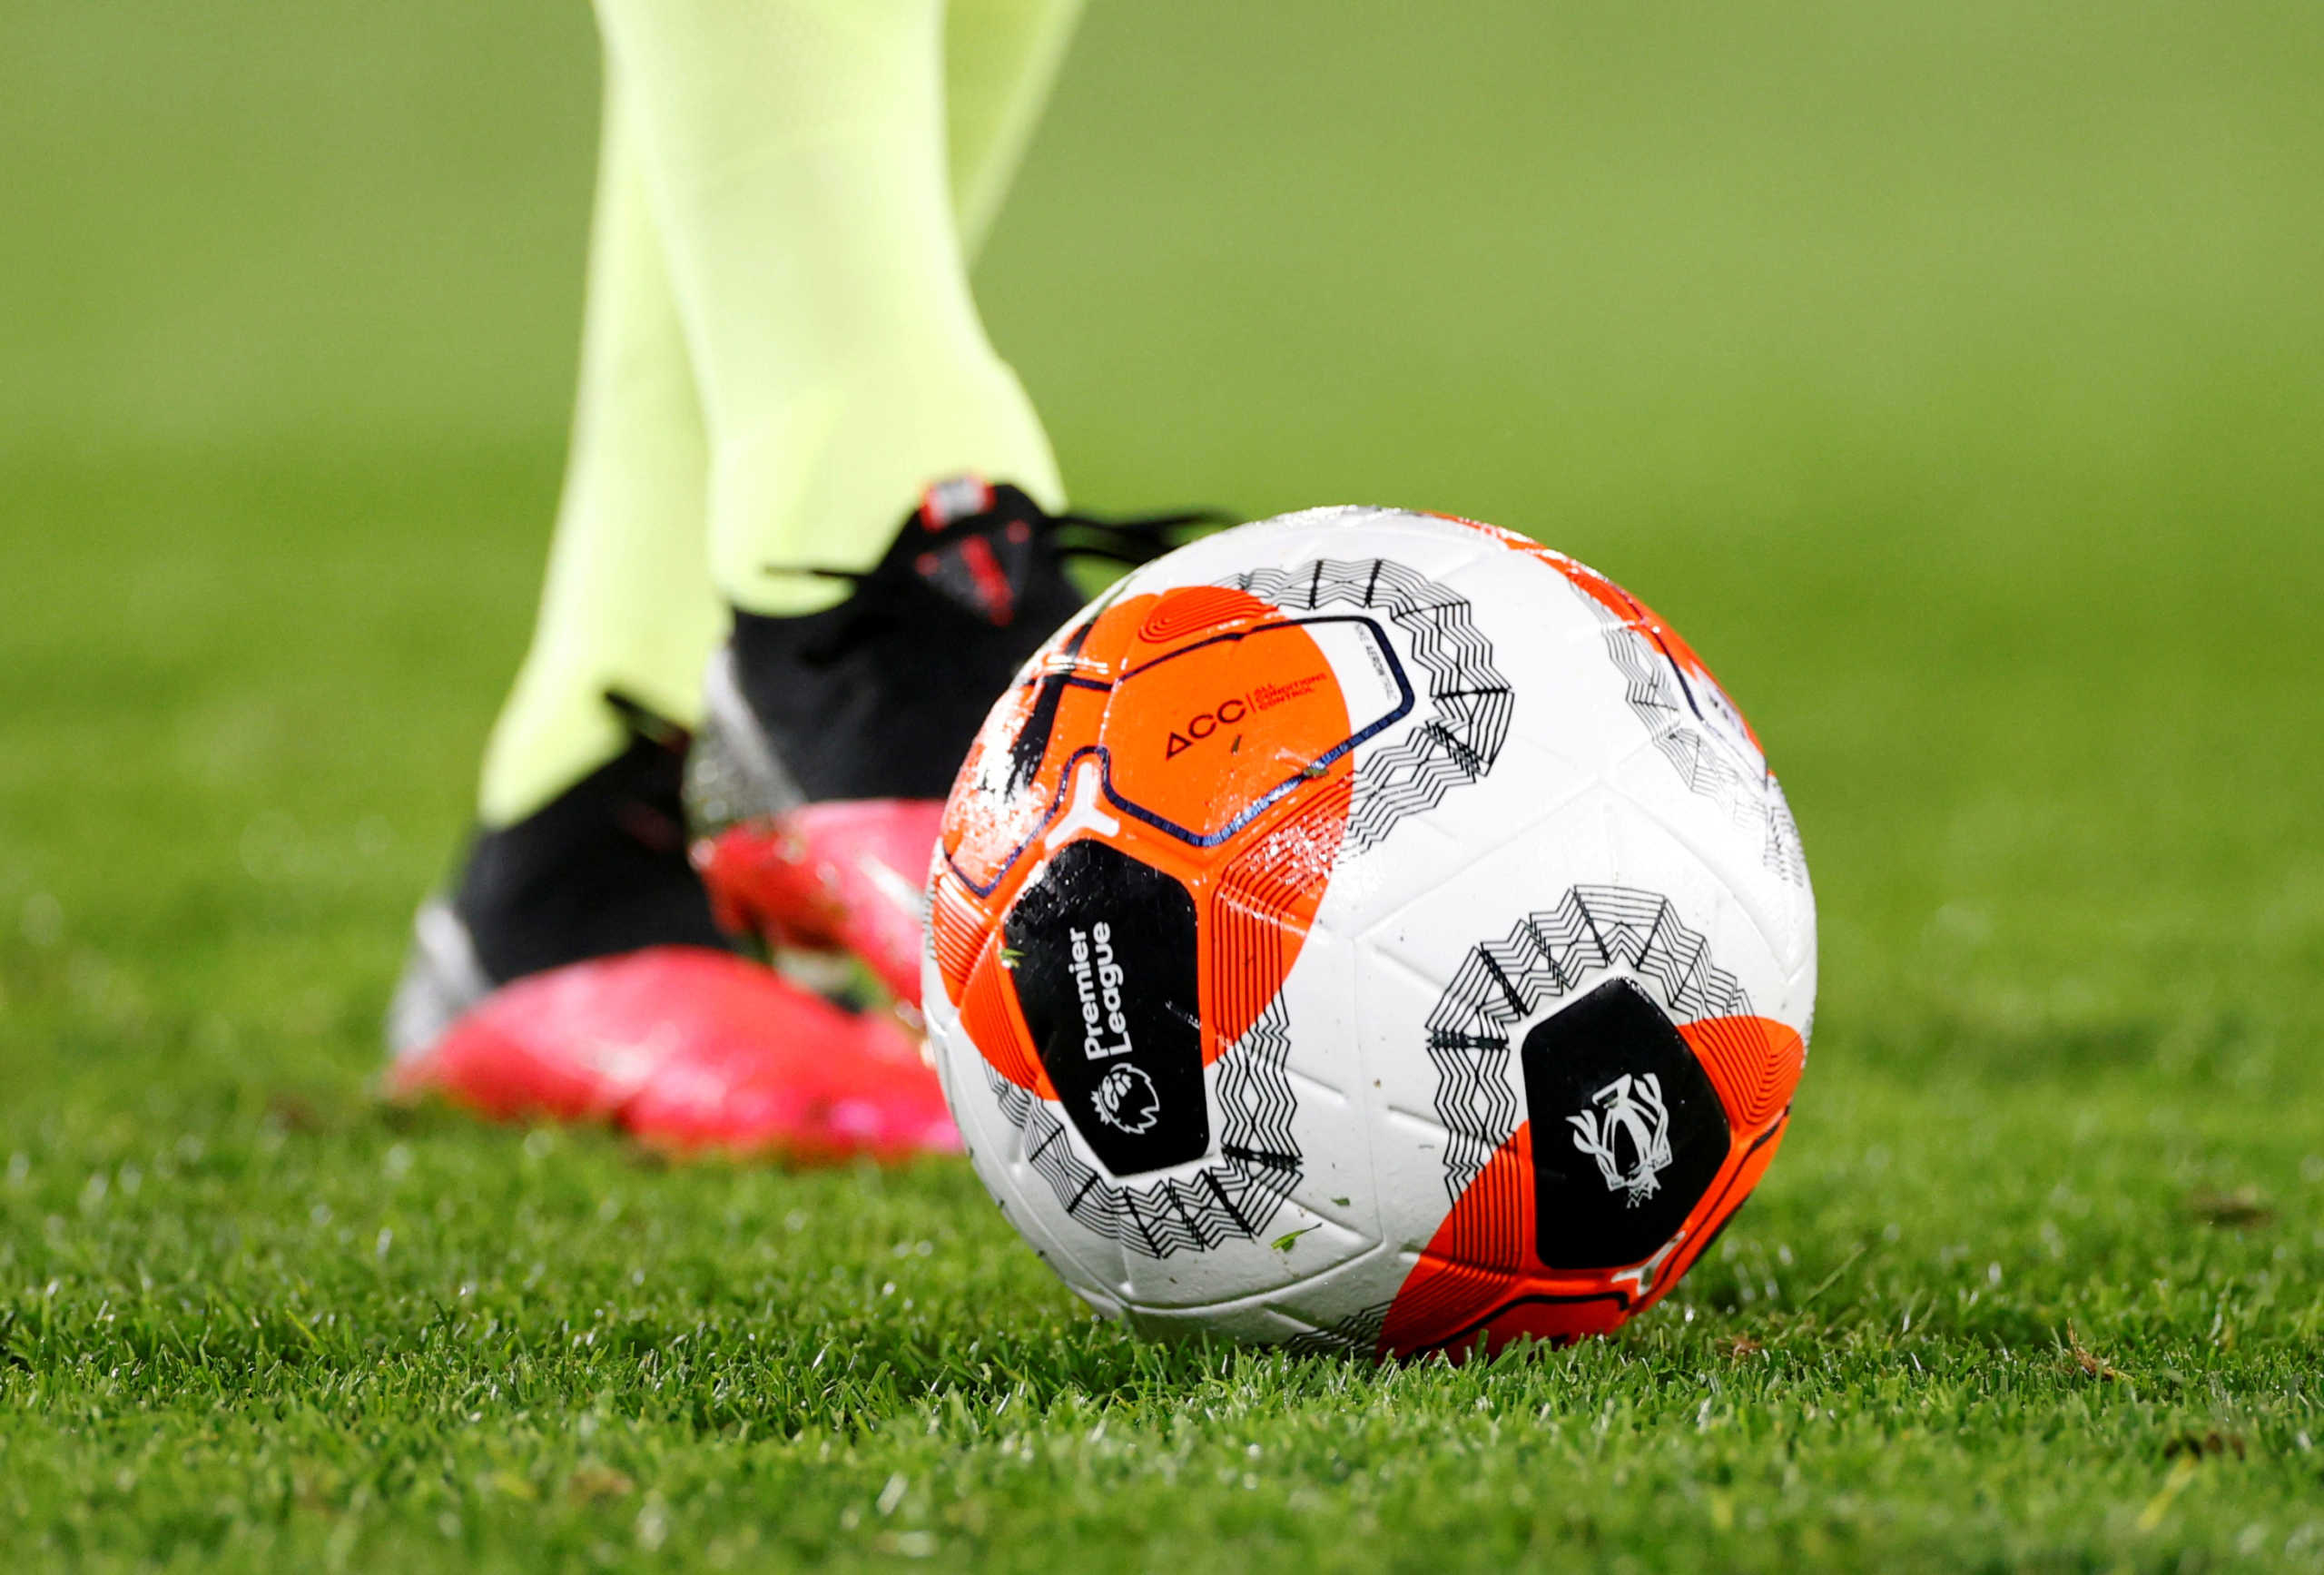 Η Premier League ξεκινάει οριστικά – Σέντρα στις 17 Ιουνίου με ματσάρα